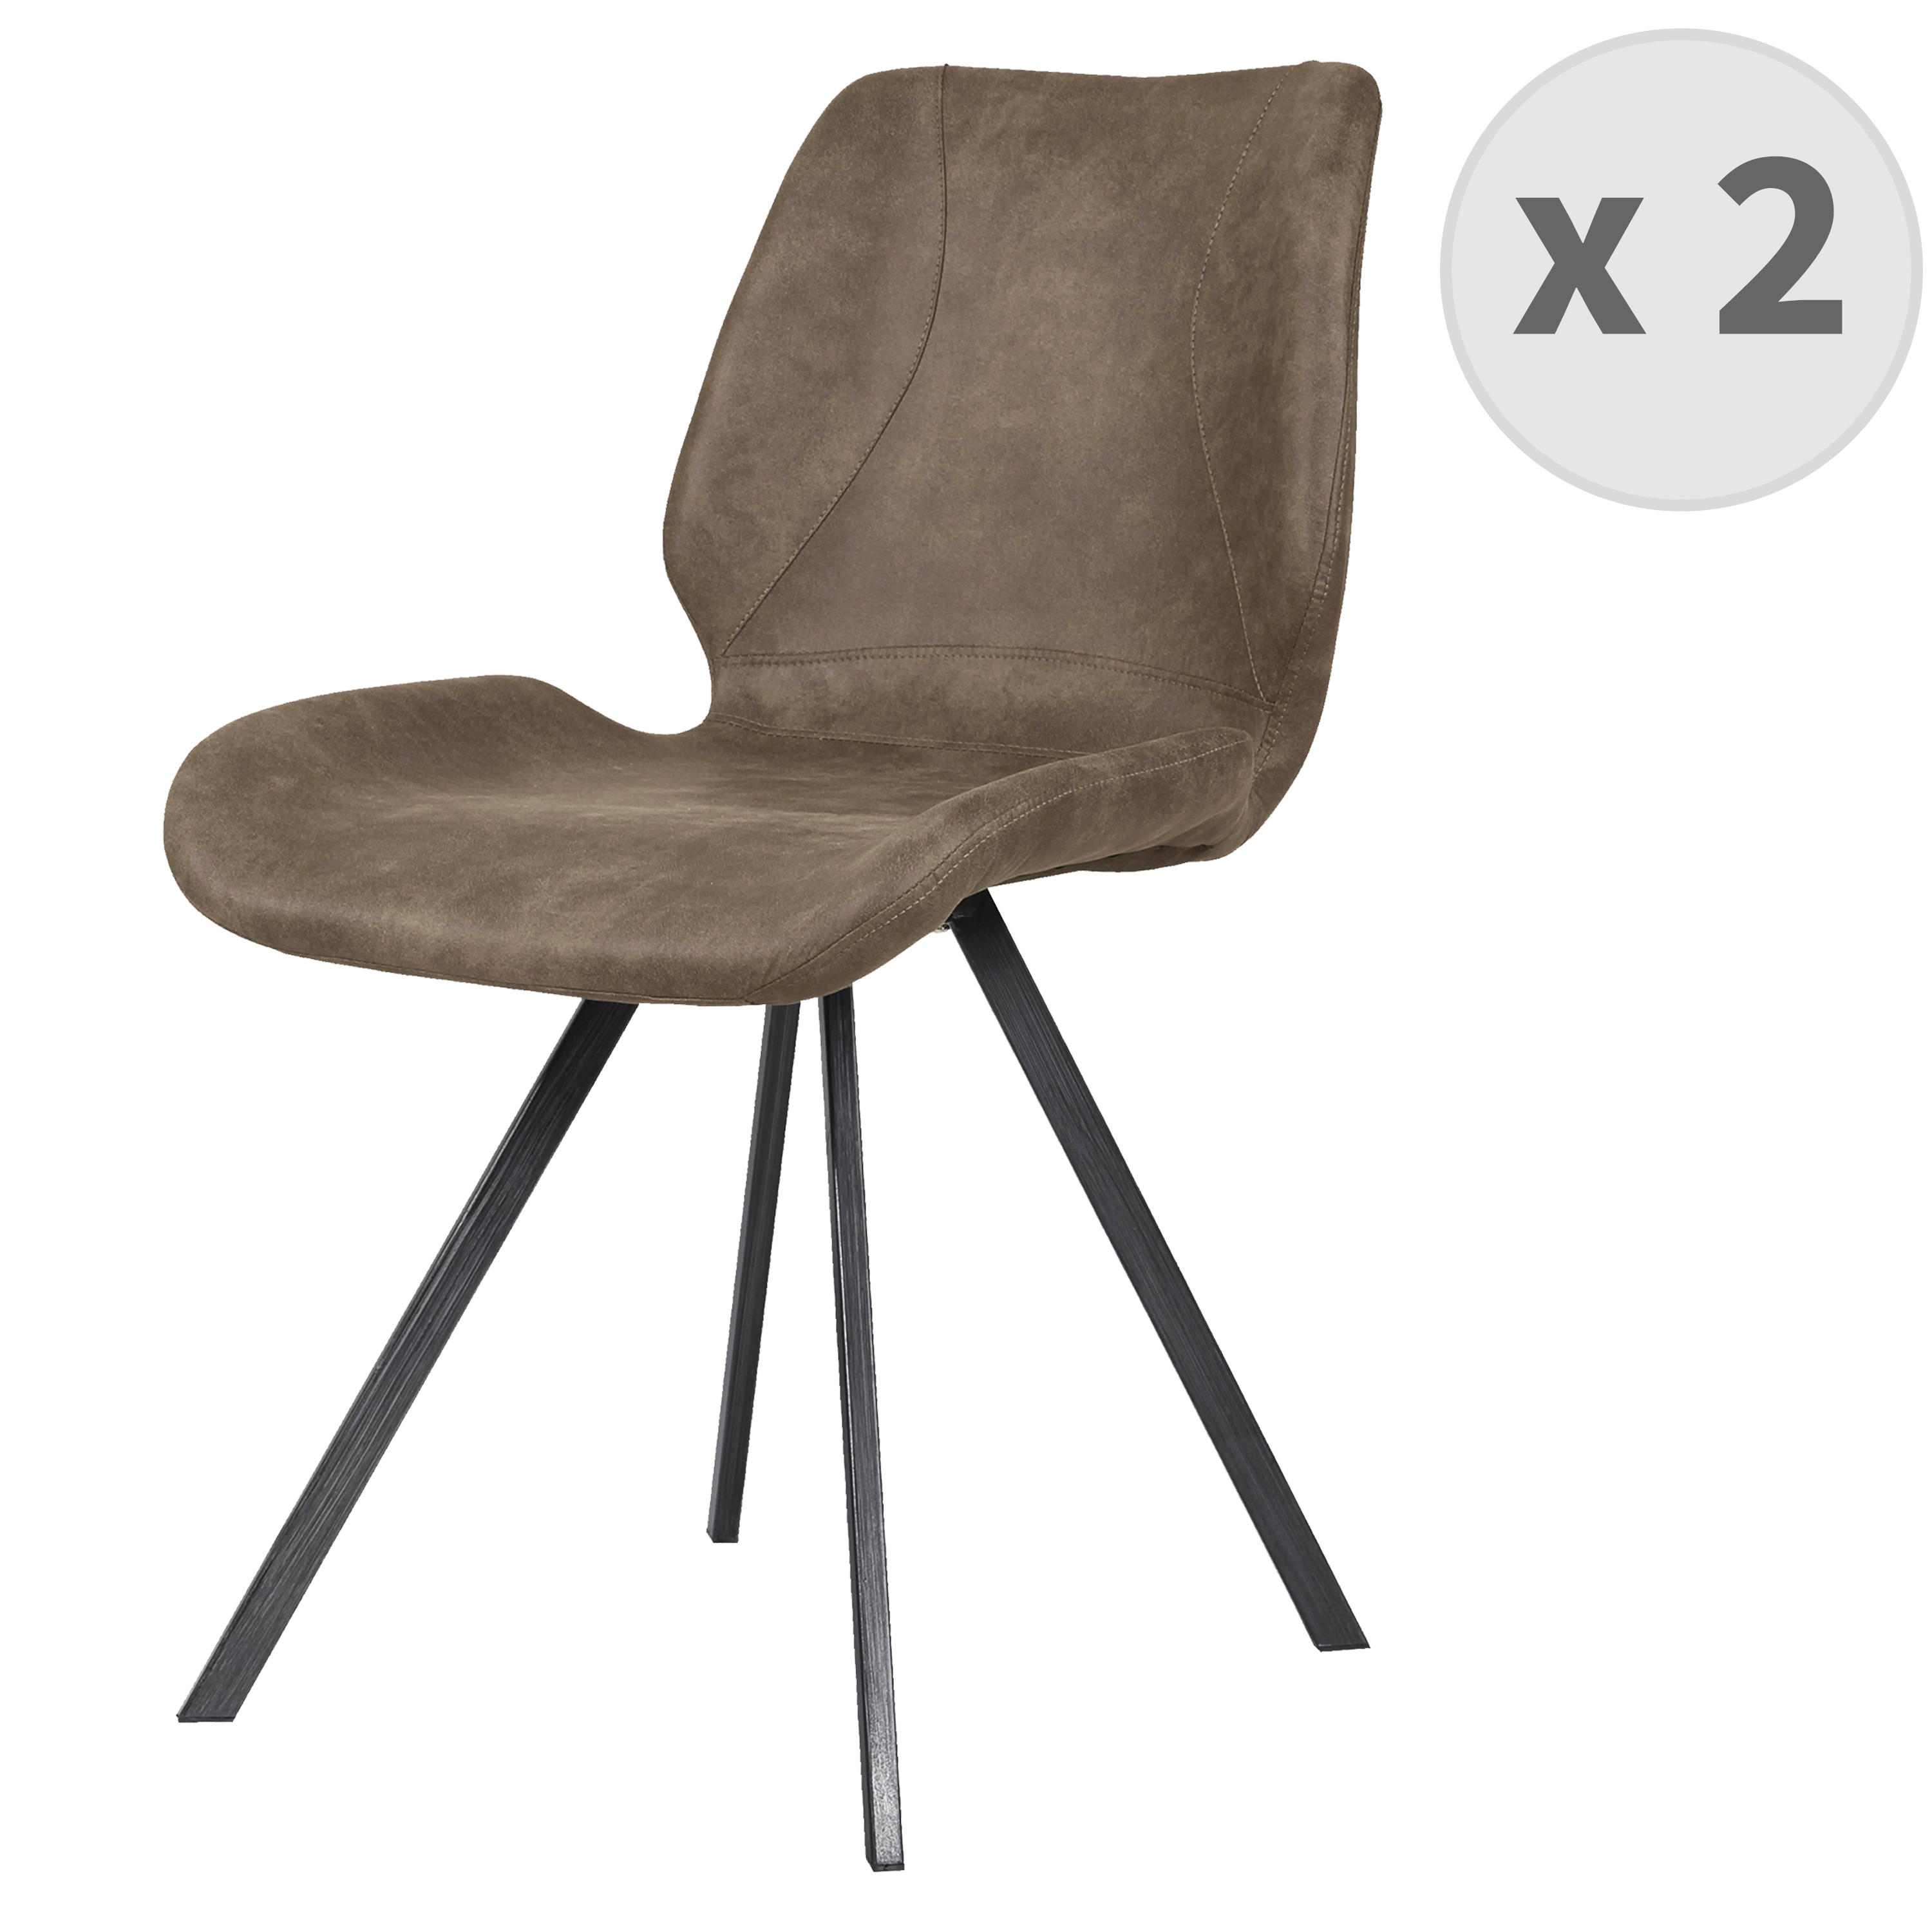 Chaise industrielle microfibre vintage marron/métal noir brossés (x2)